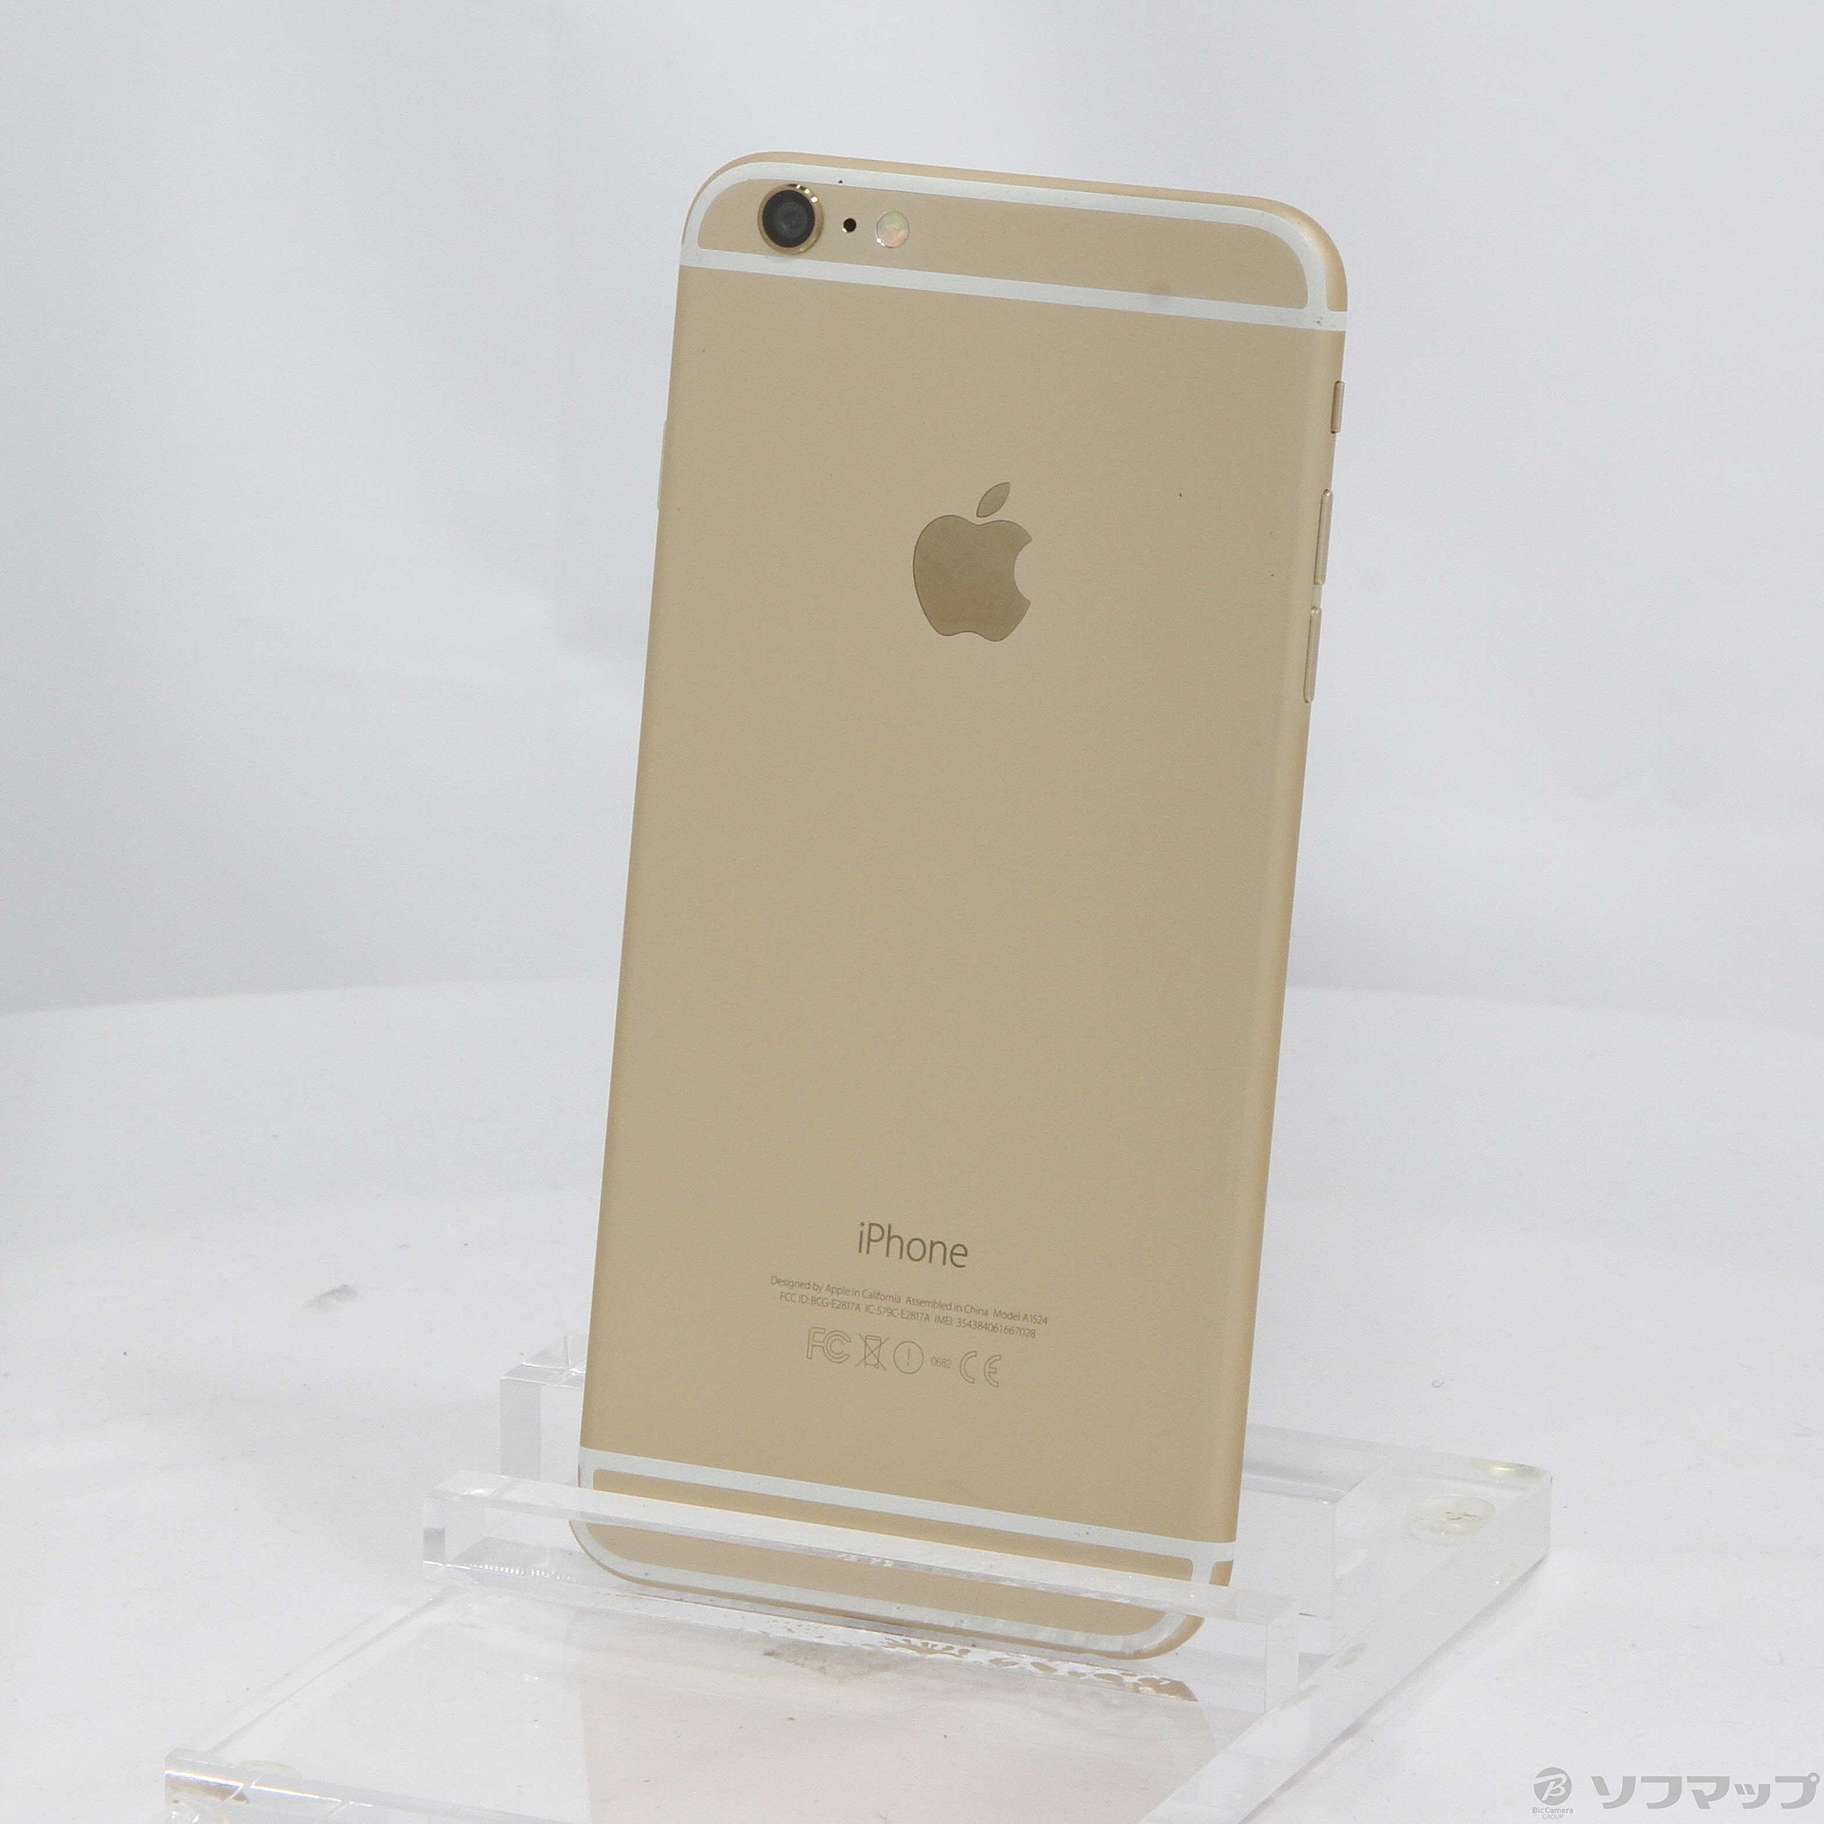 iPhone 6 Plus 128gb auスマートフォン/携帯電話 - スマートフォン本体